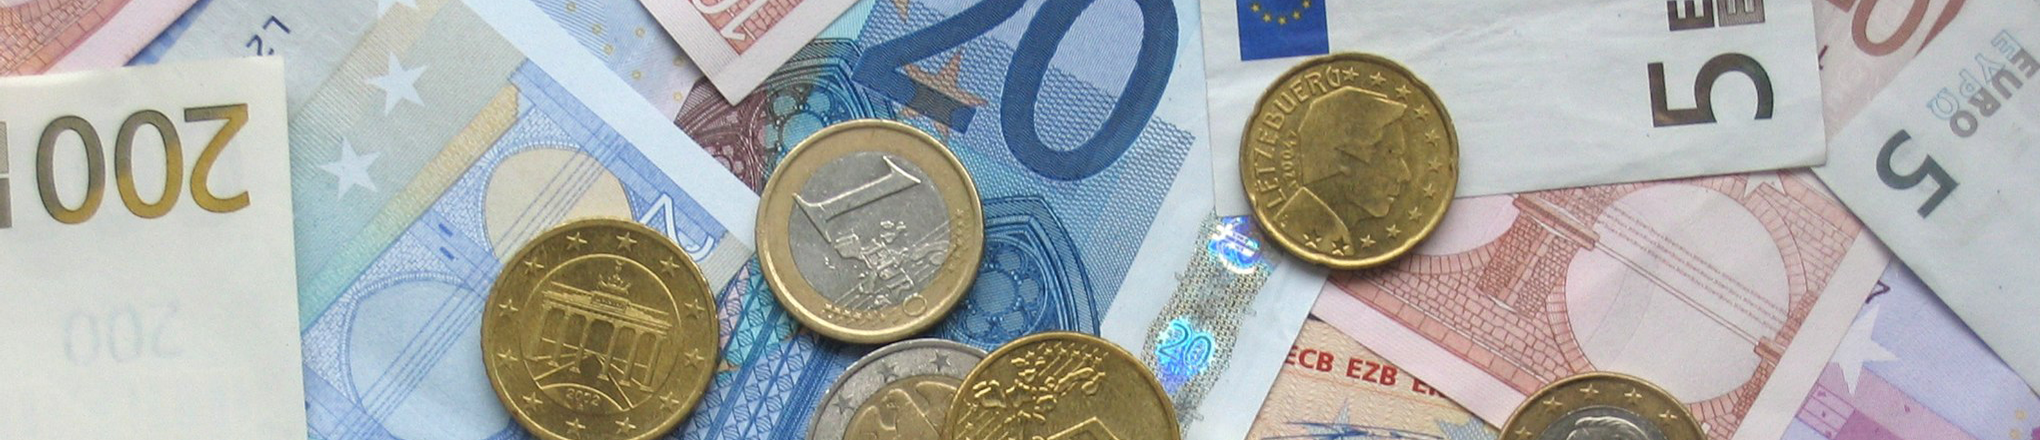 Euromünzen und -geldscheine